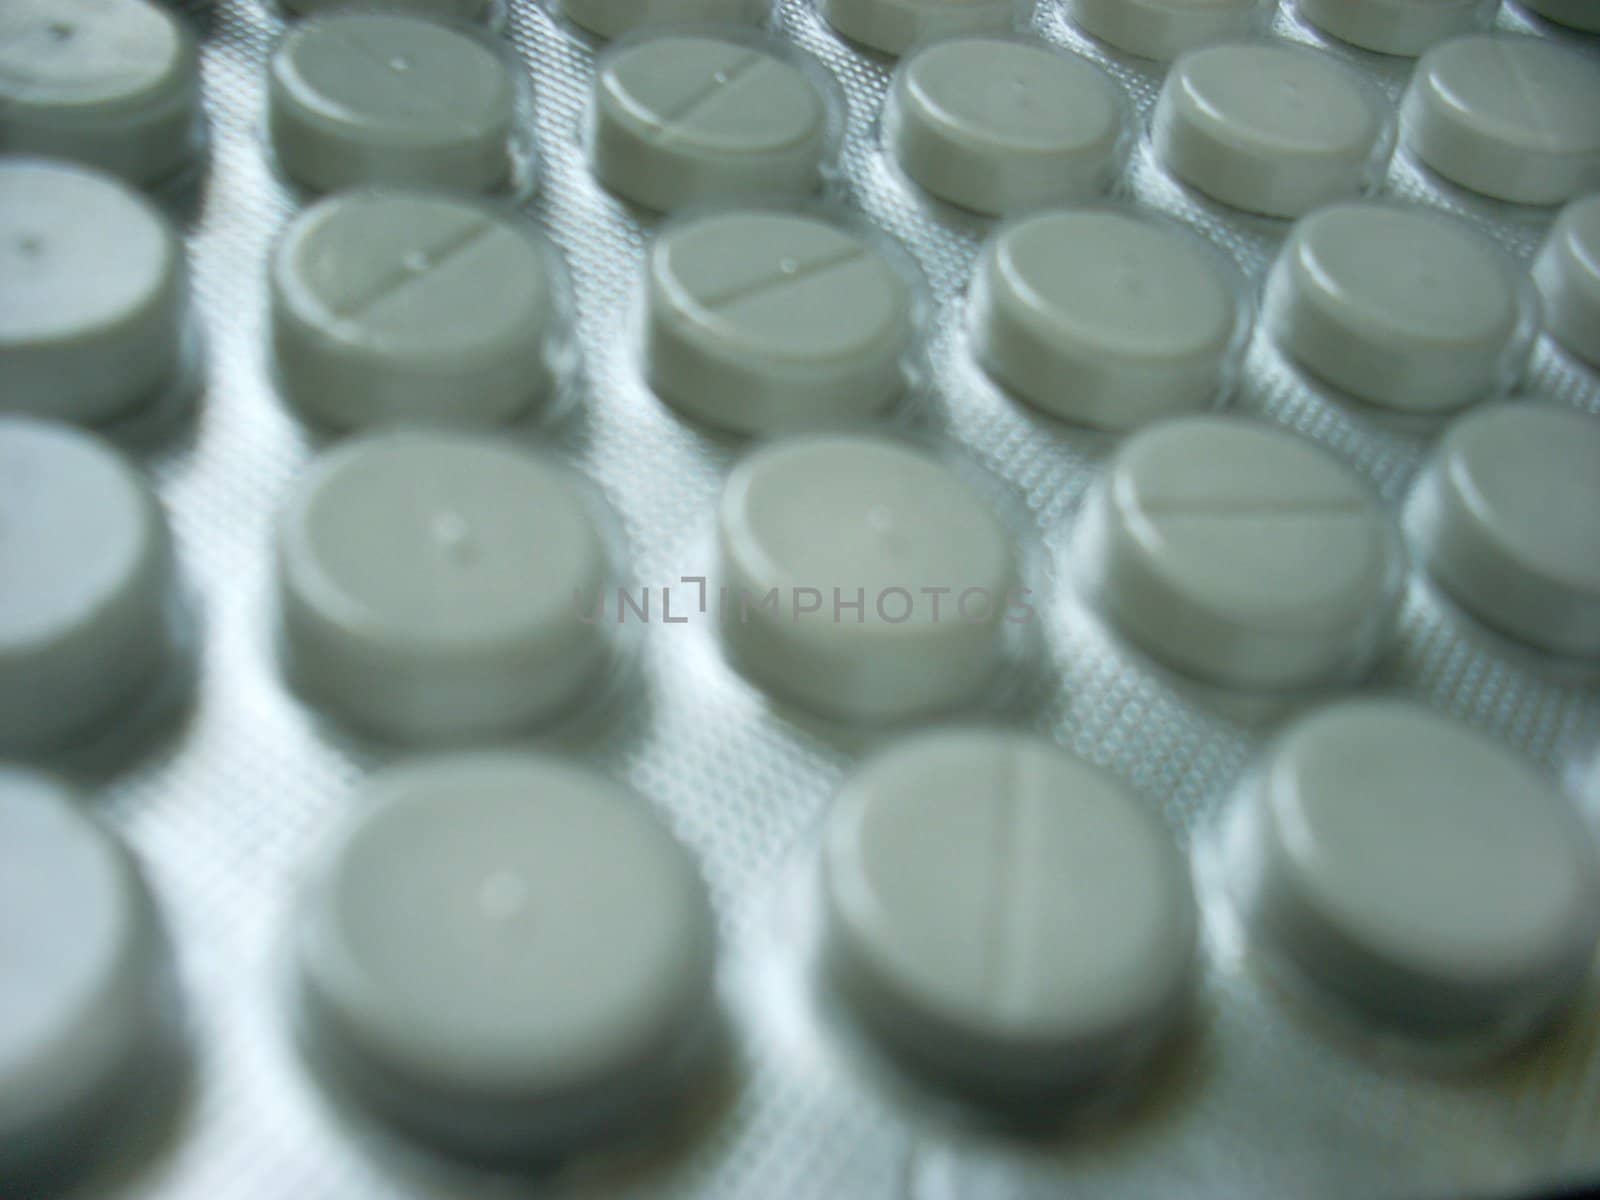 Some medical tablets